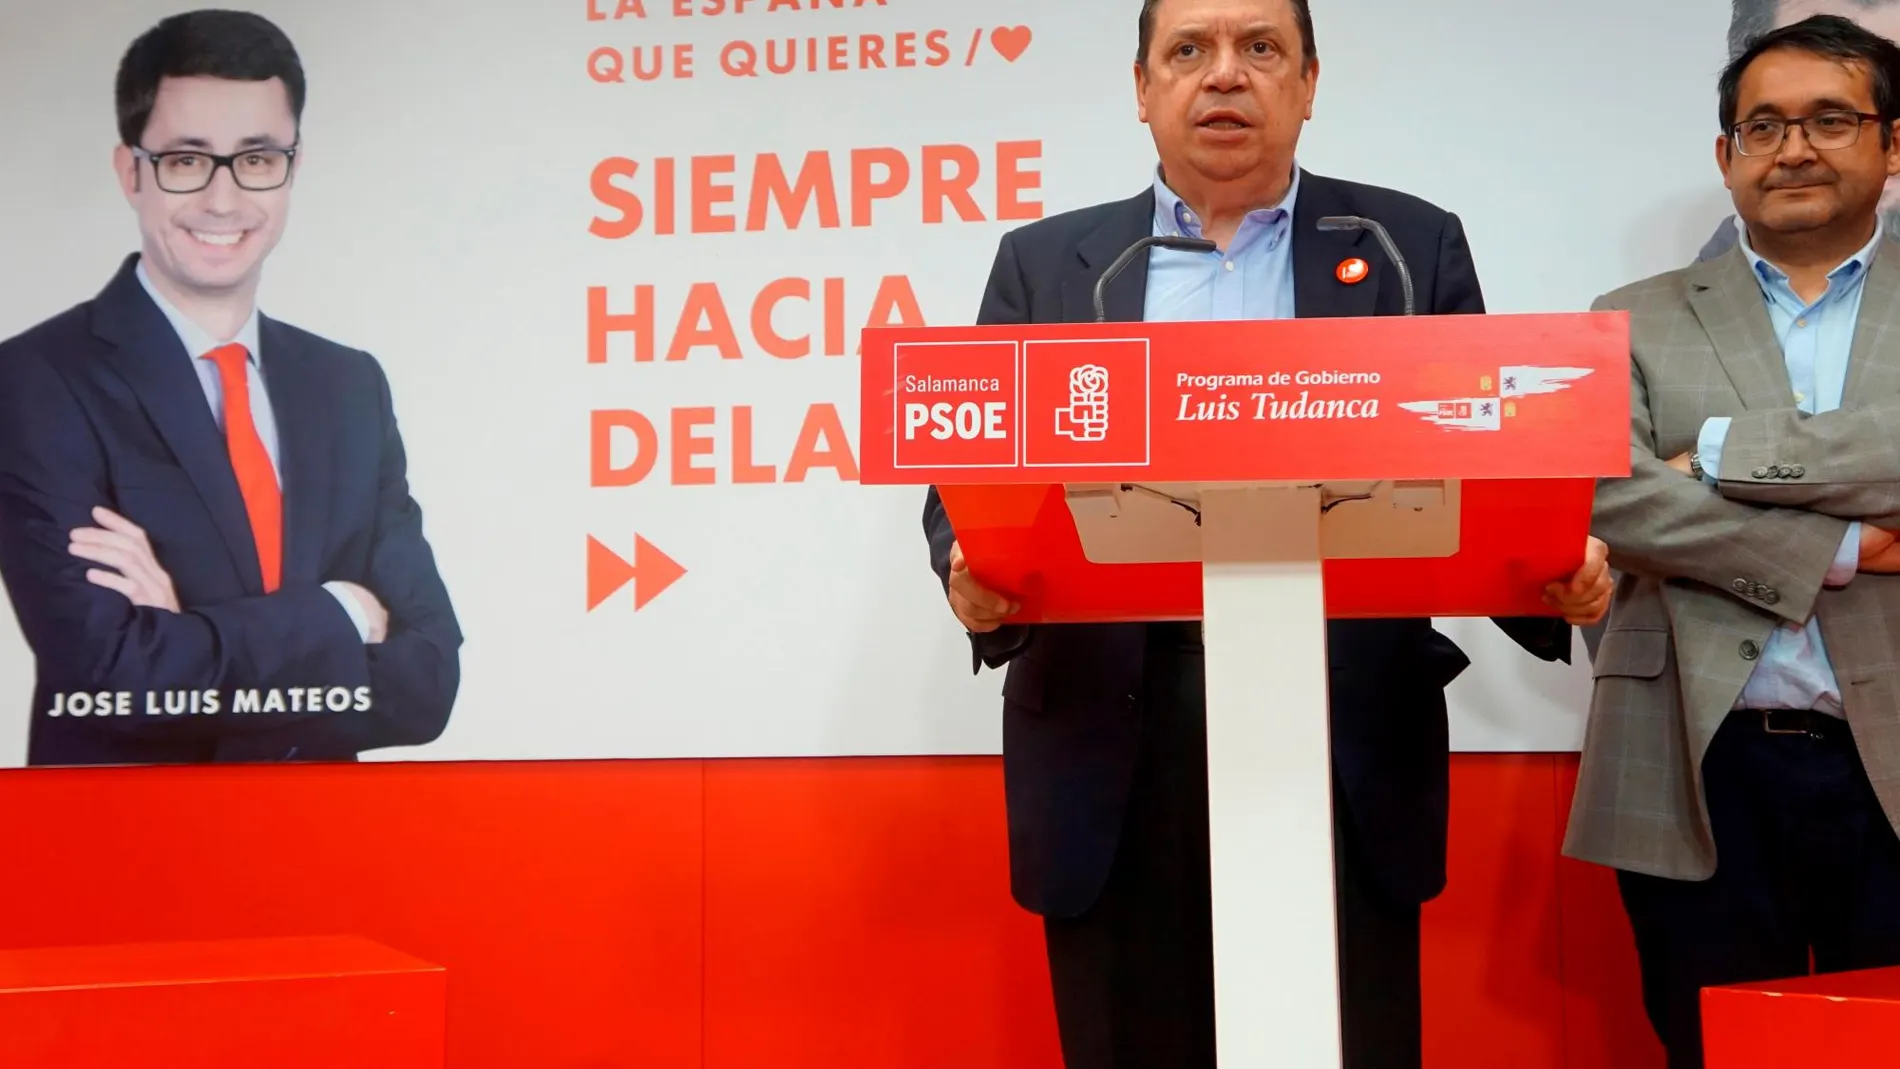 El ministro de Agricultura, Luis Planas, participa en un acto electoral celebrado en Salamanca. EFE/J.M.GARCÍA